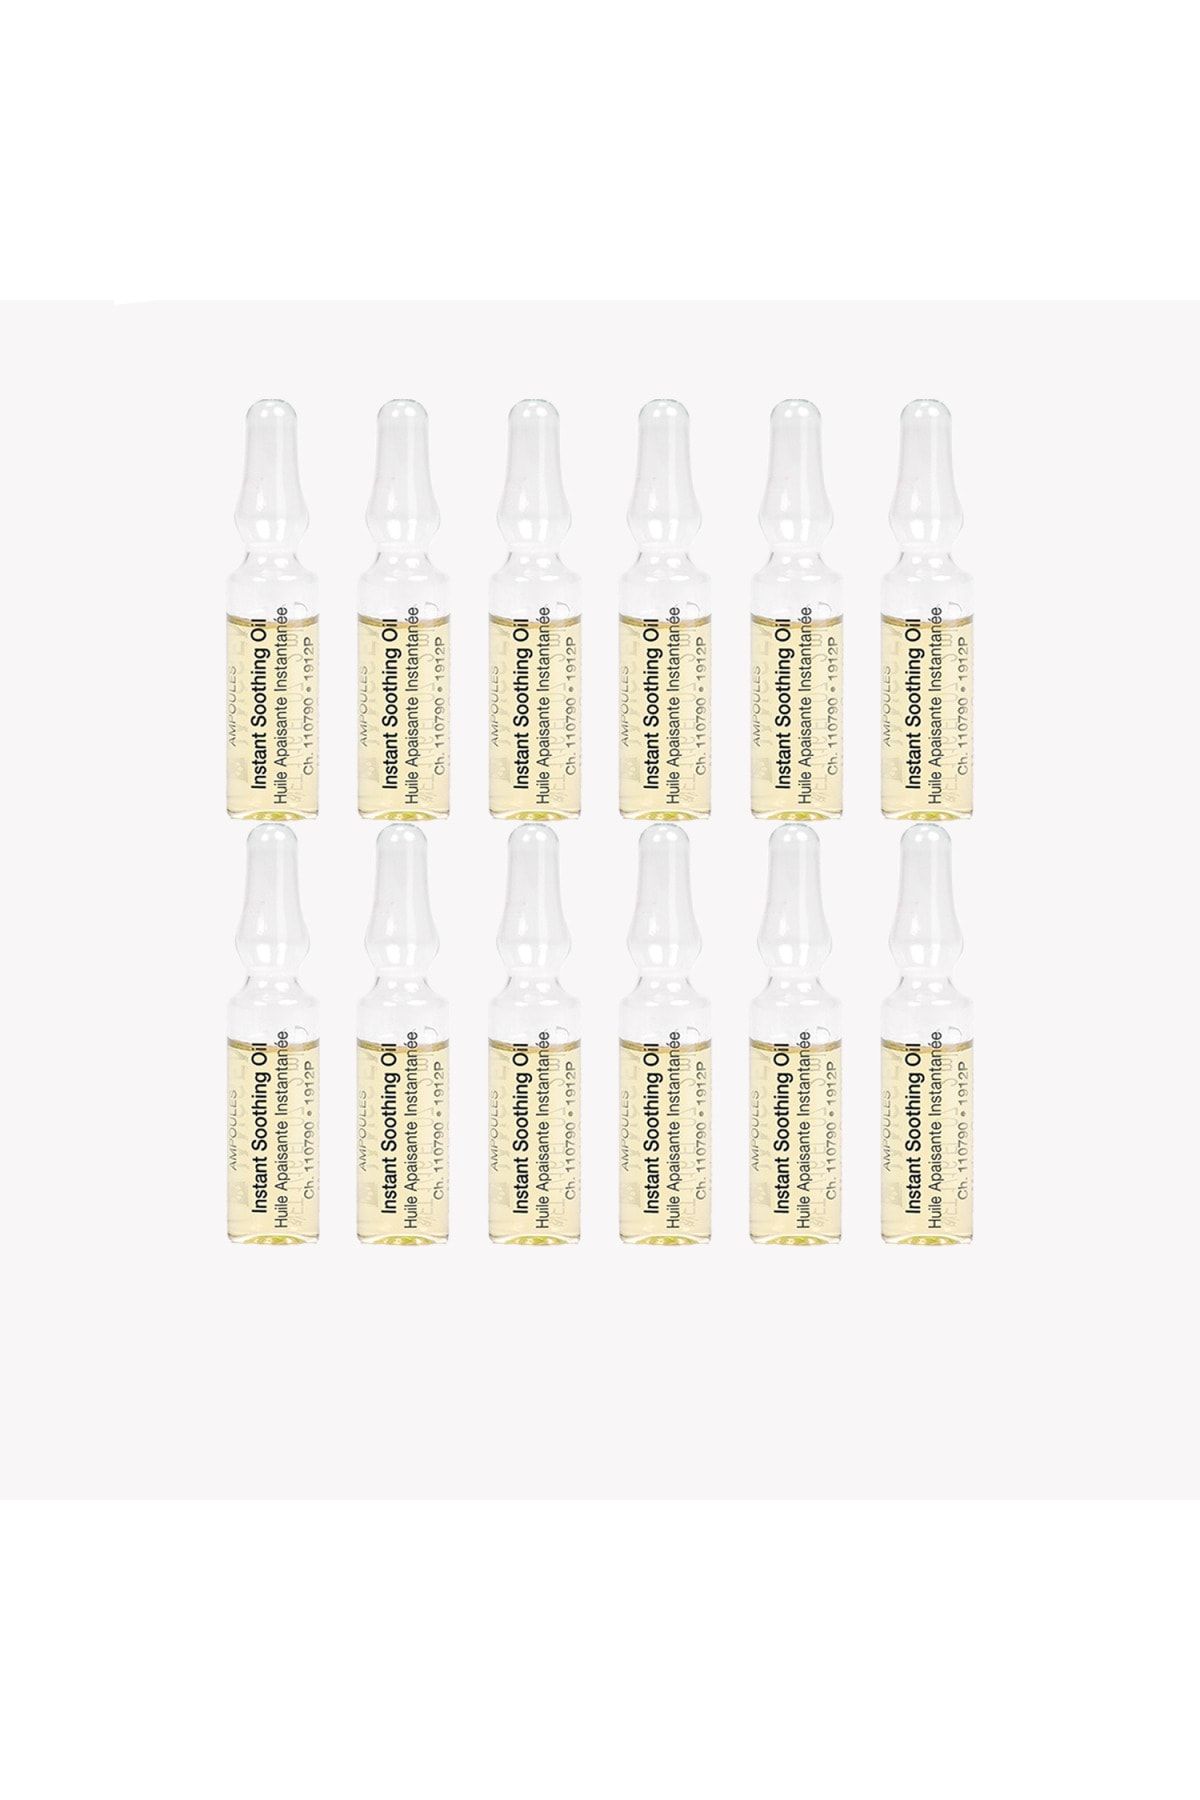 Janssen Cosmetics Instant Soothing Oil (hassas & Kaşıntı Giderici) 12 li Paket